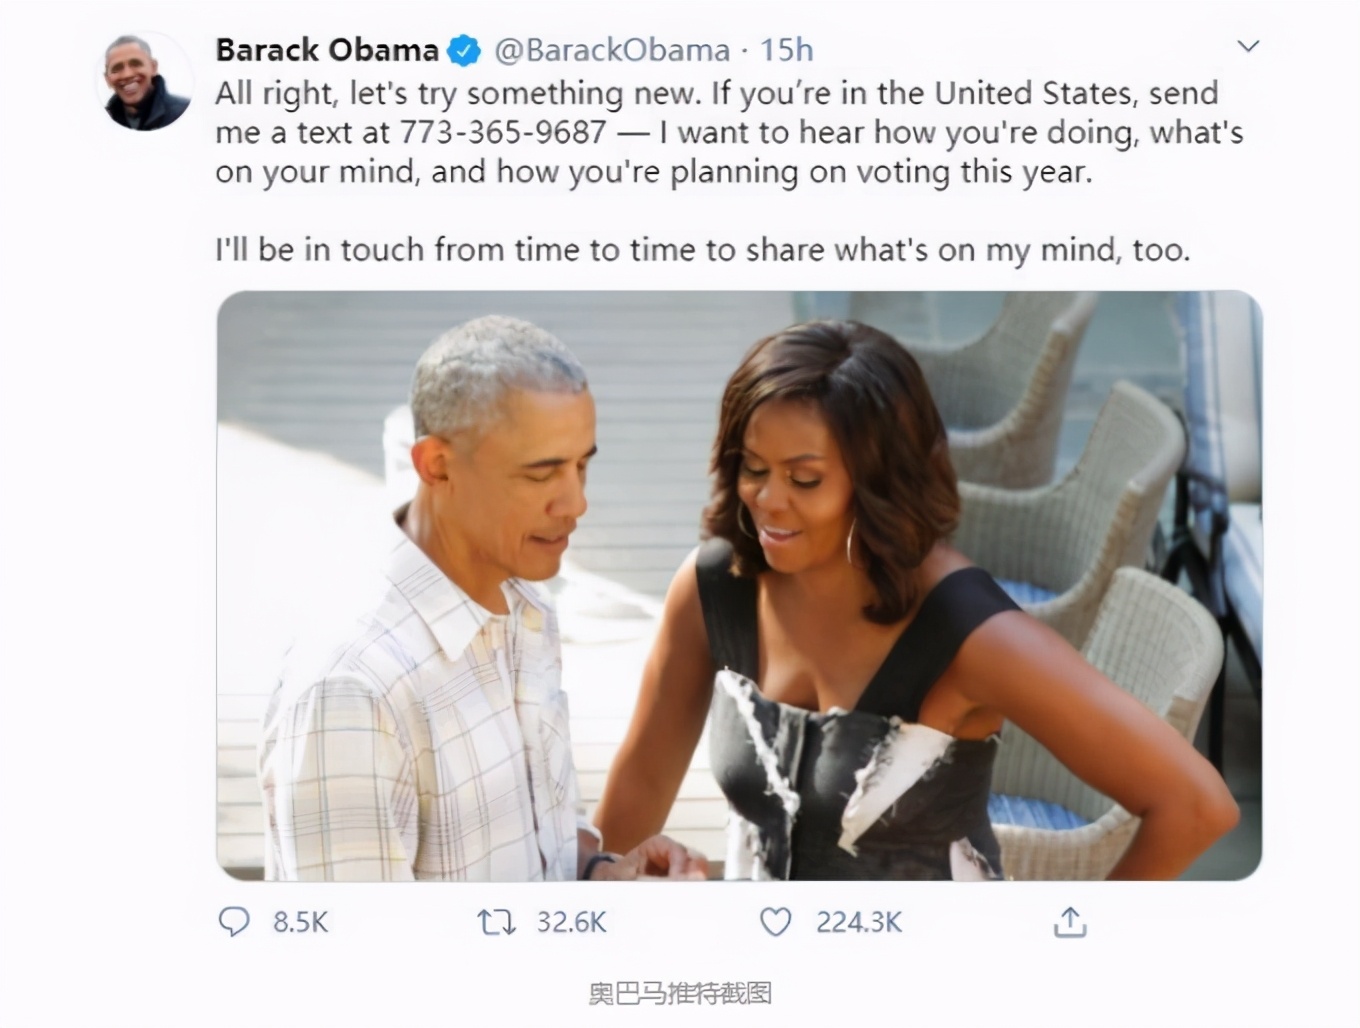 奥巴马公布电话号码，并贴出与妻子看手机的照片：想让民众说说大选想法